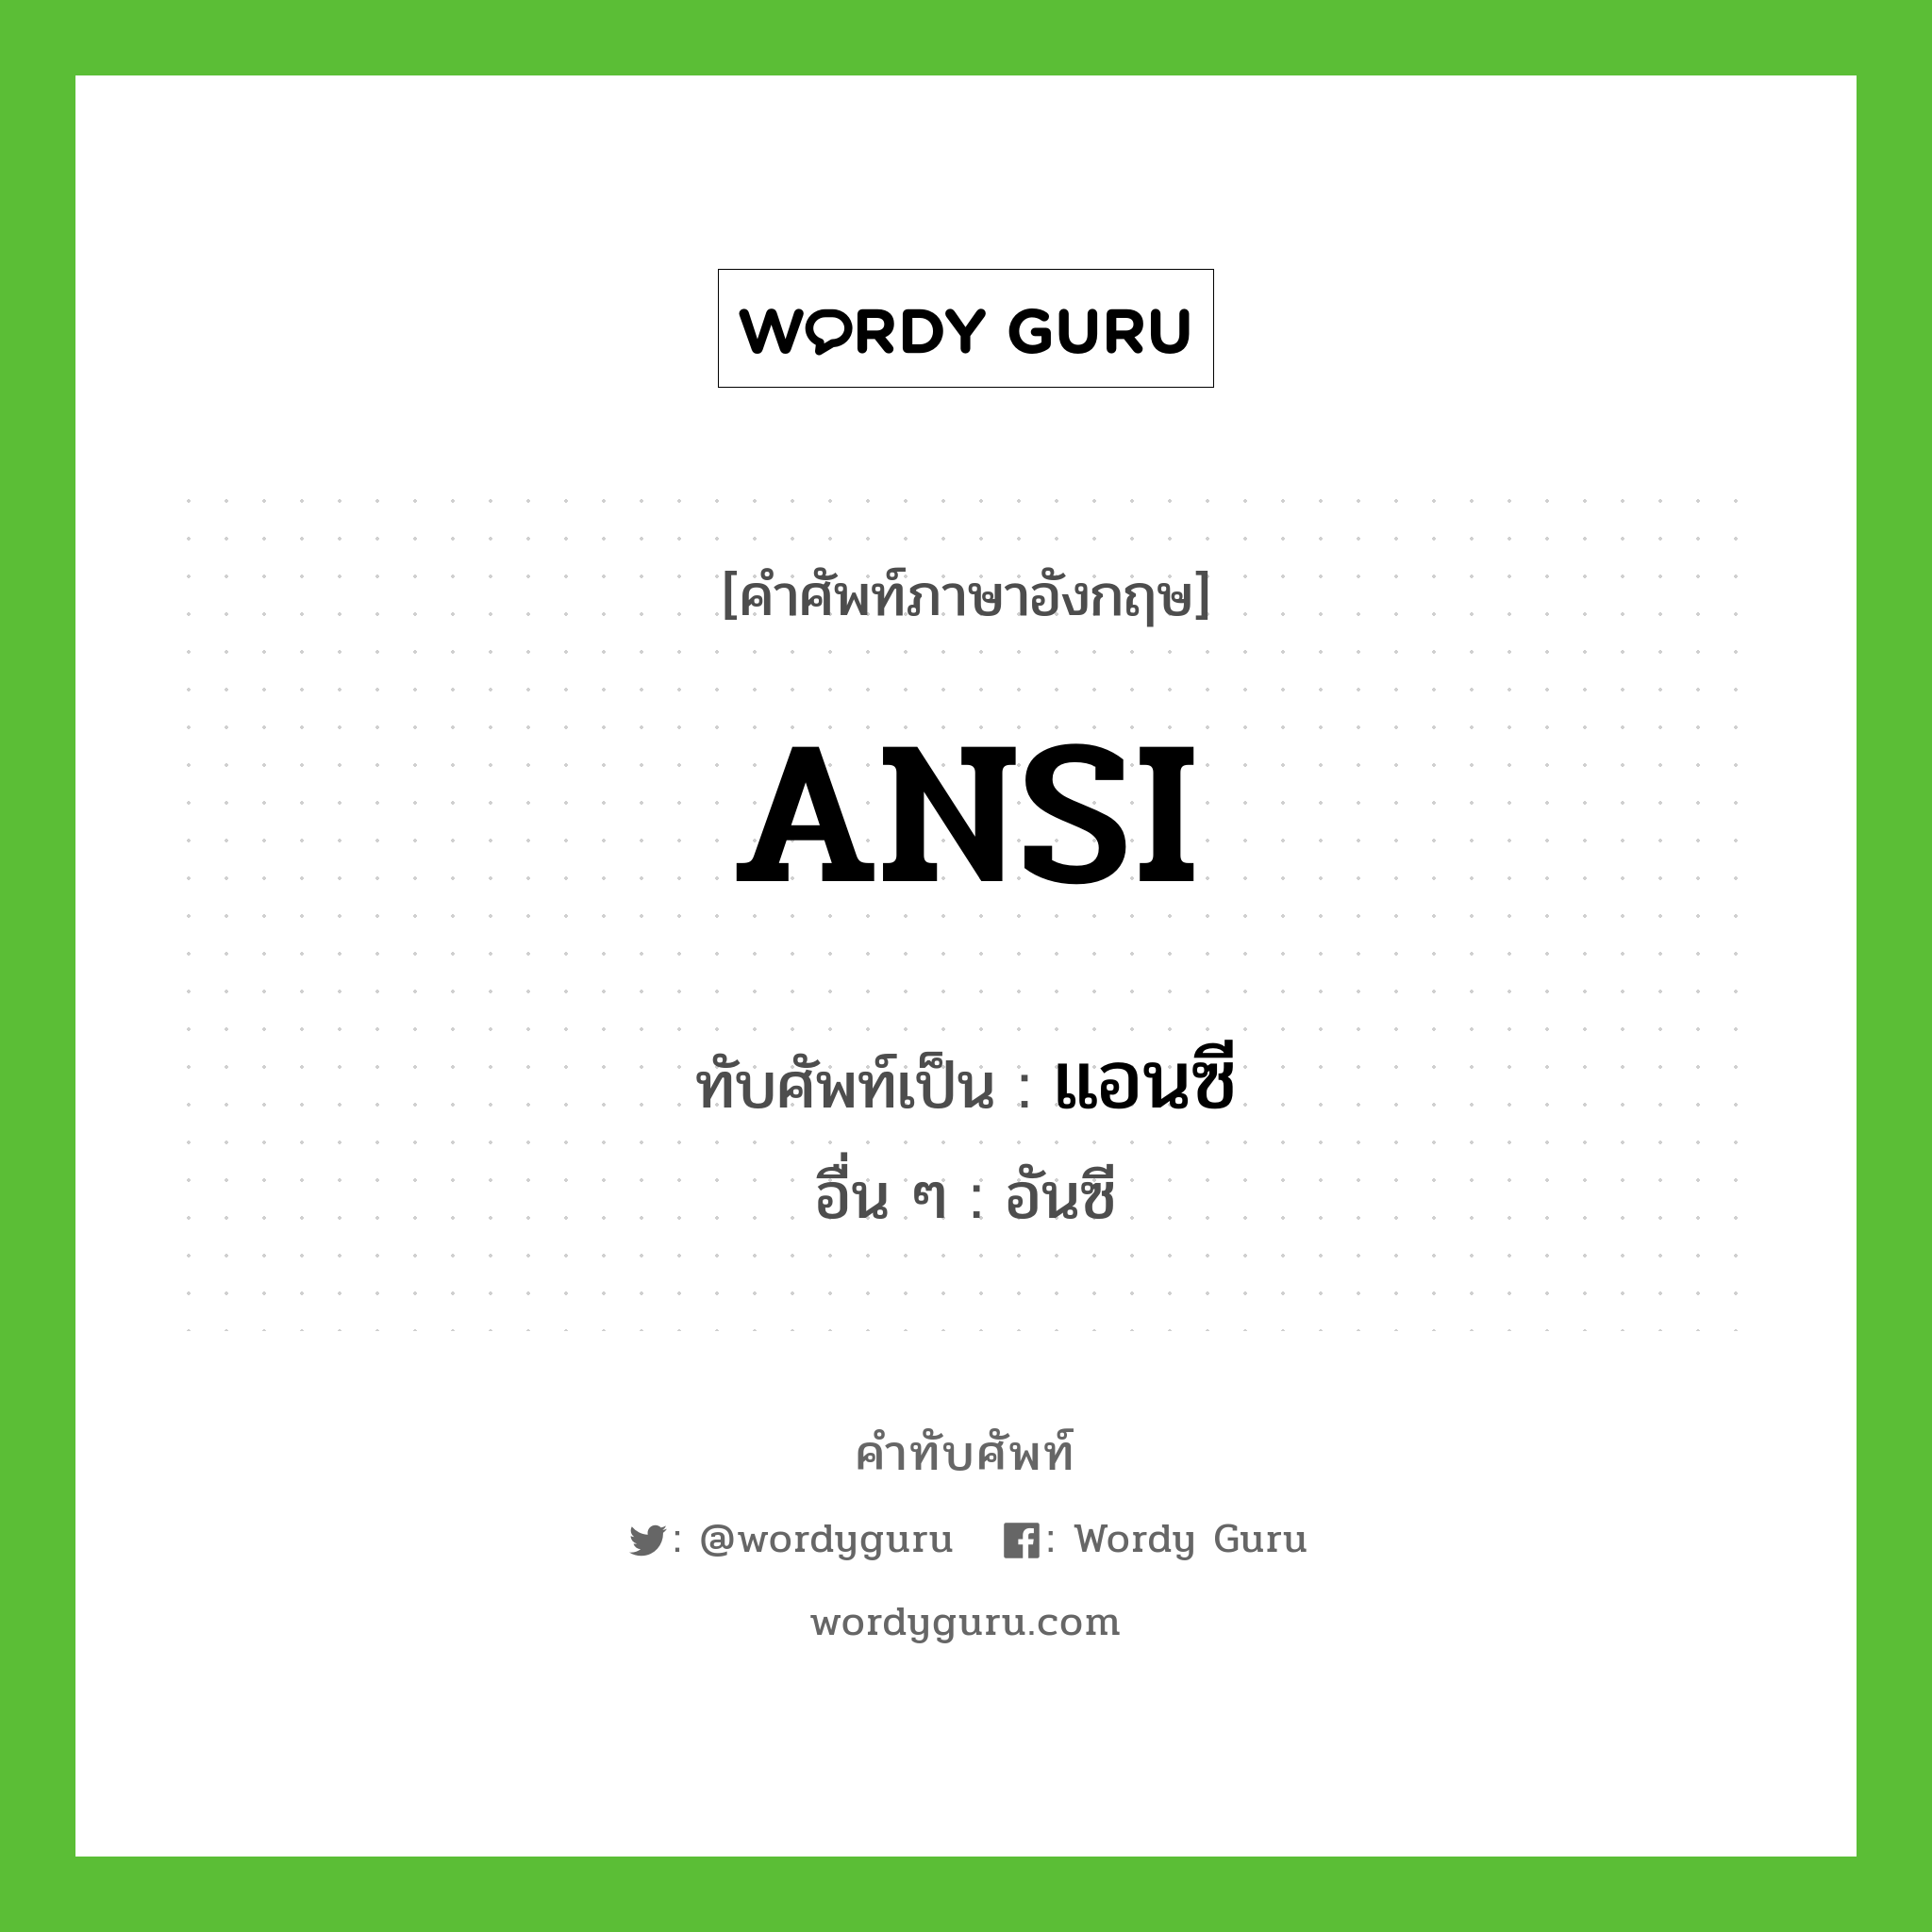 ANSI เขียนเป็นคำไทยว่าอะไร?, คำศัพท์ภาษาอังกฤษ ANSI ทับศัพท์เป็น แอนซี อื่น ๆ อันซี